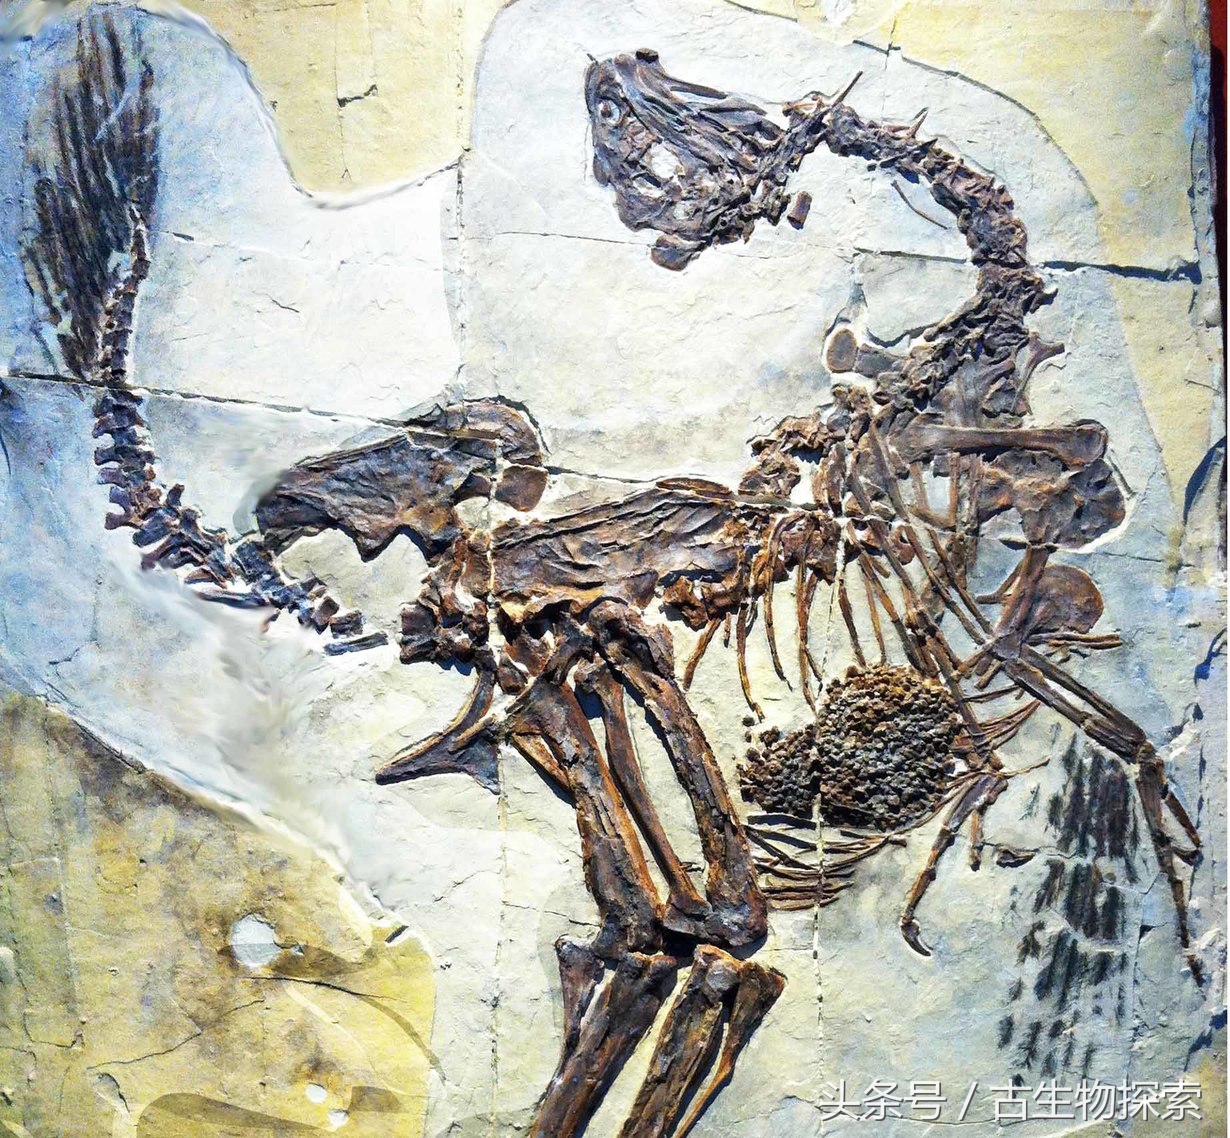 图注:尾羽龙化石上的羽毛印痕,图片来自网络20年前的1997年,整个中国